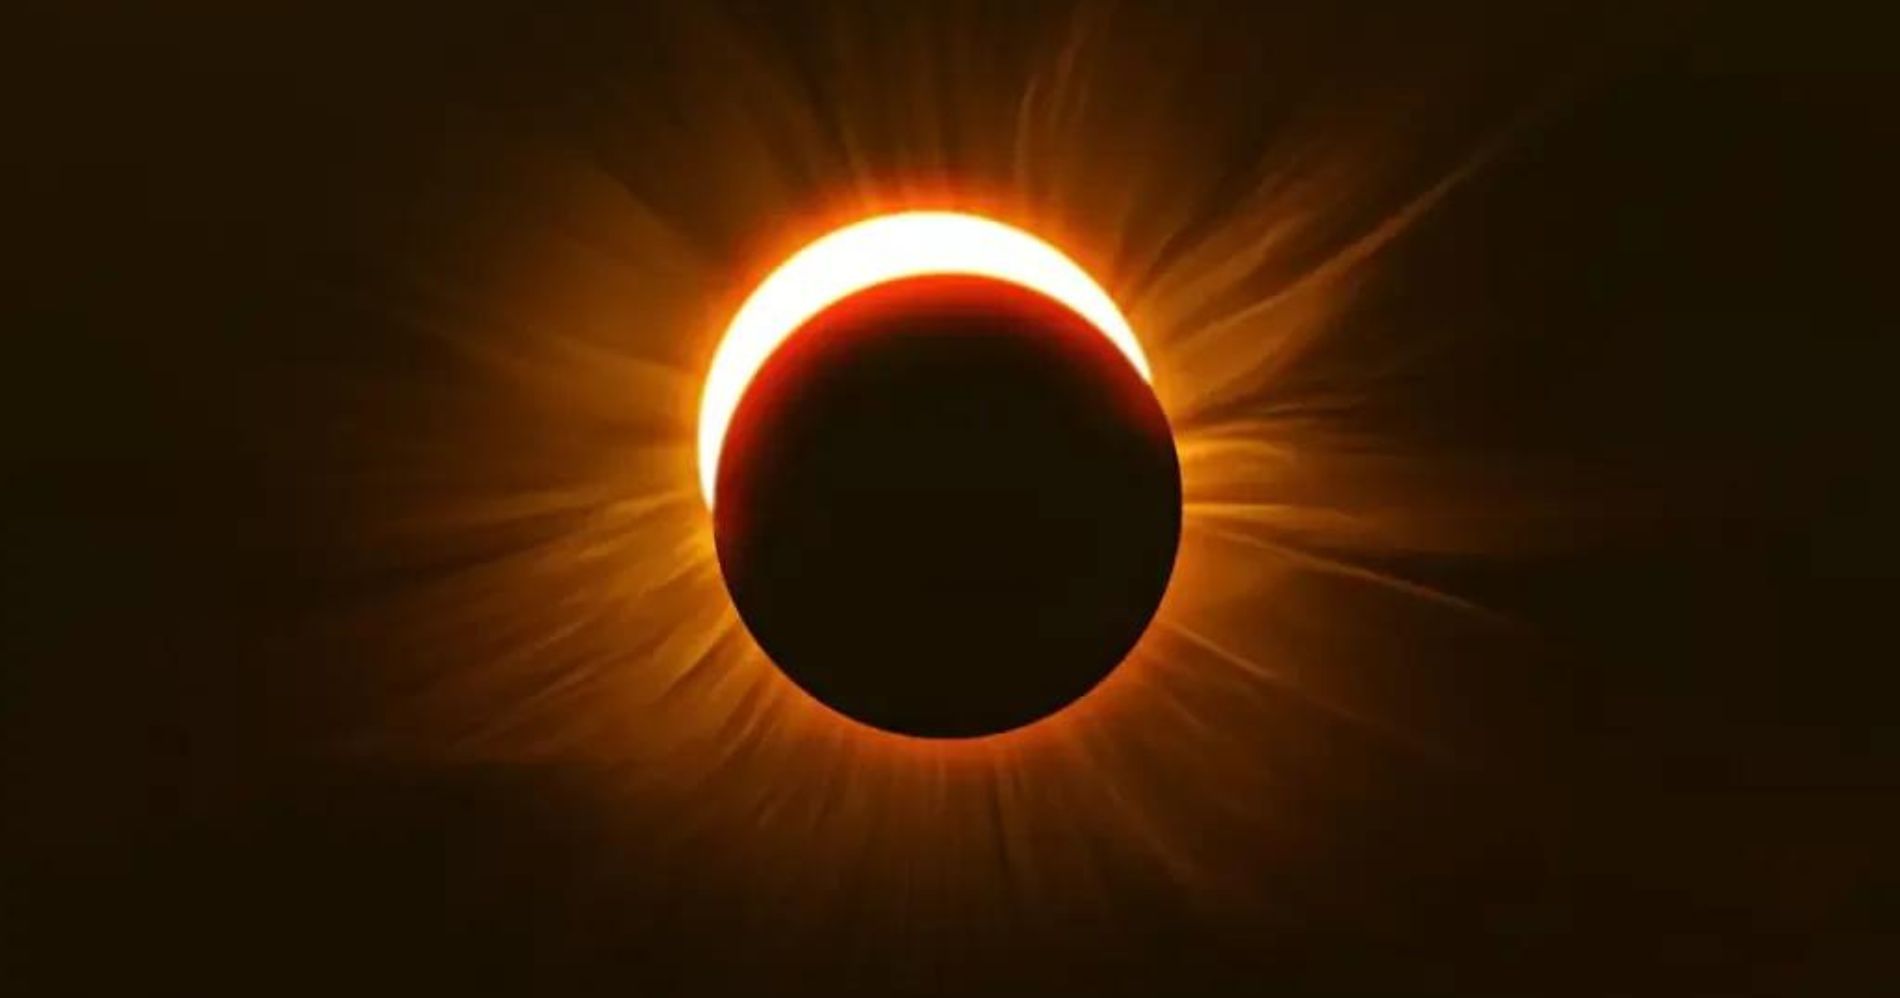 Outubro trará eclipse solar raro visível em todo o Brasil; confira as precauções para observar com segurança